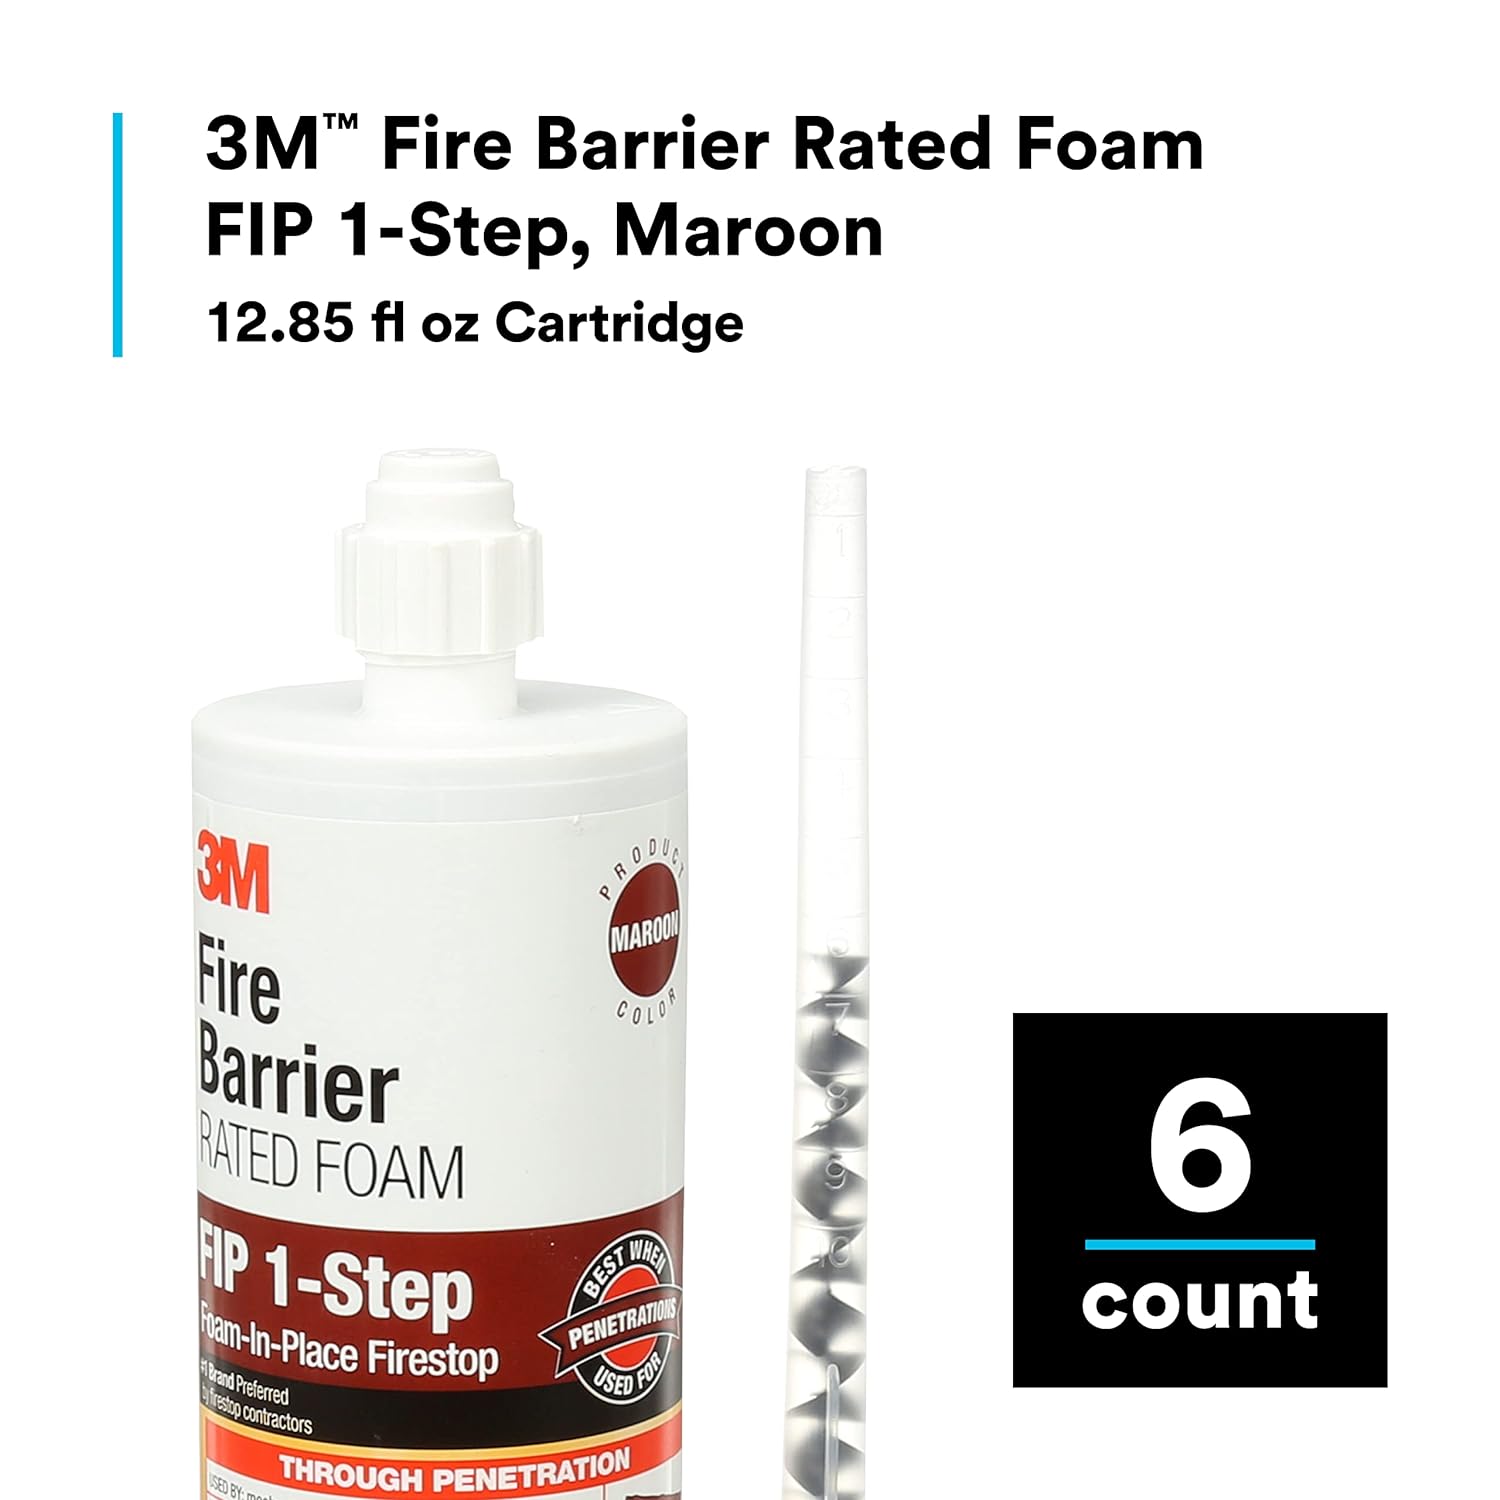 3M™ Fire Barrier Rated Foam FIP 1-Step, Maroon, 12.85 fl oz Cartridge